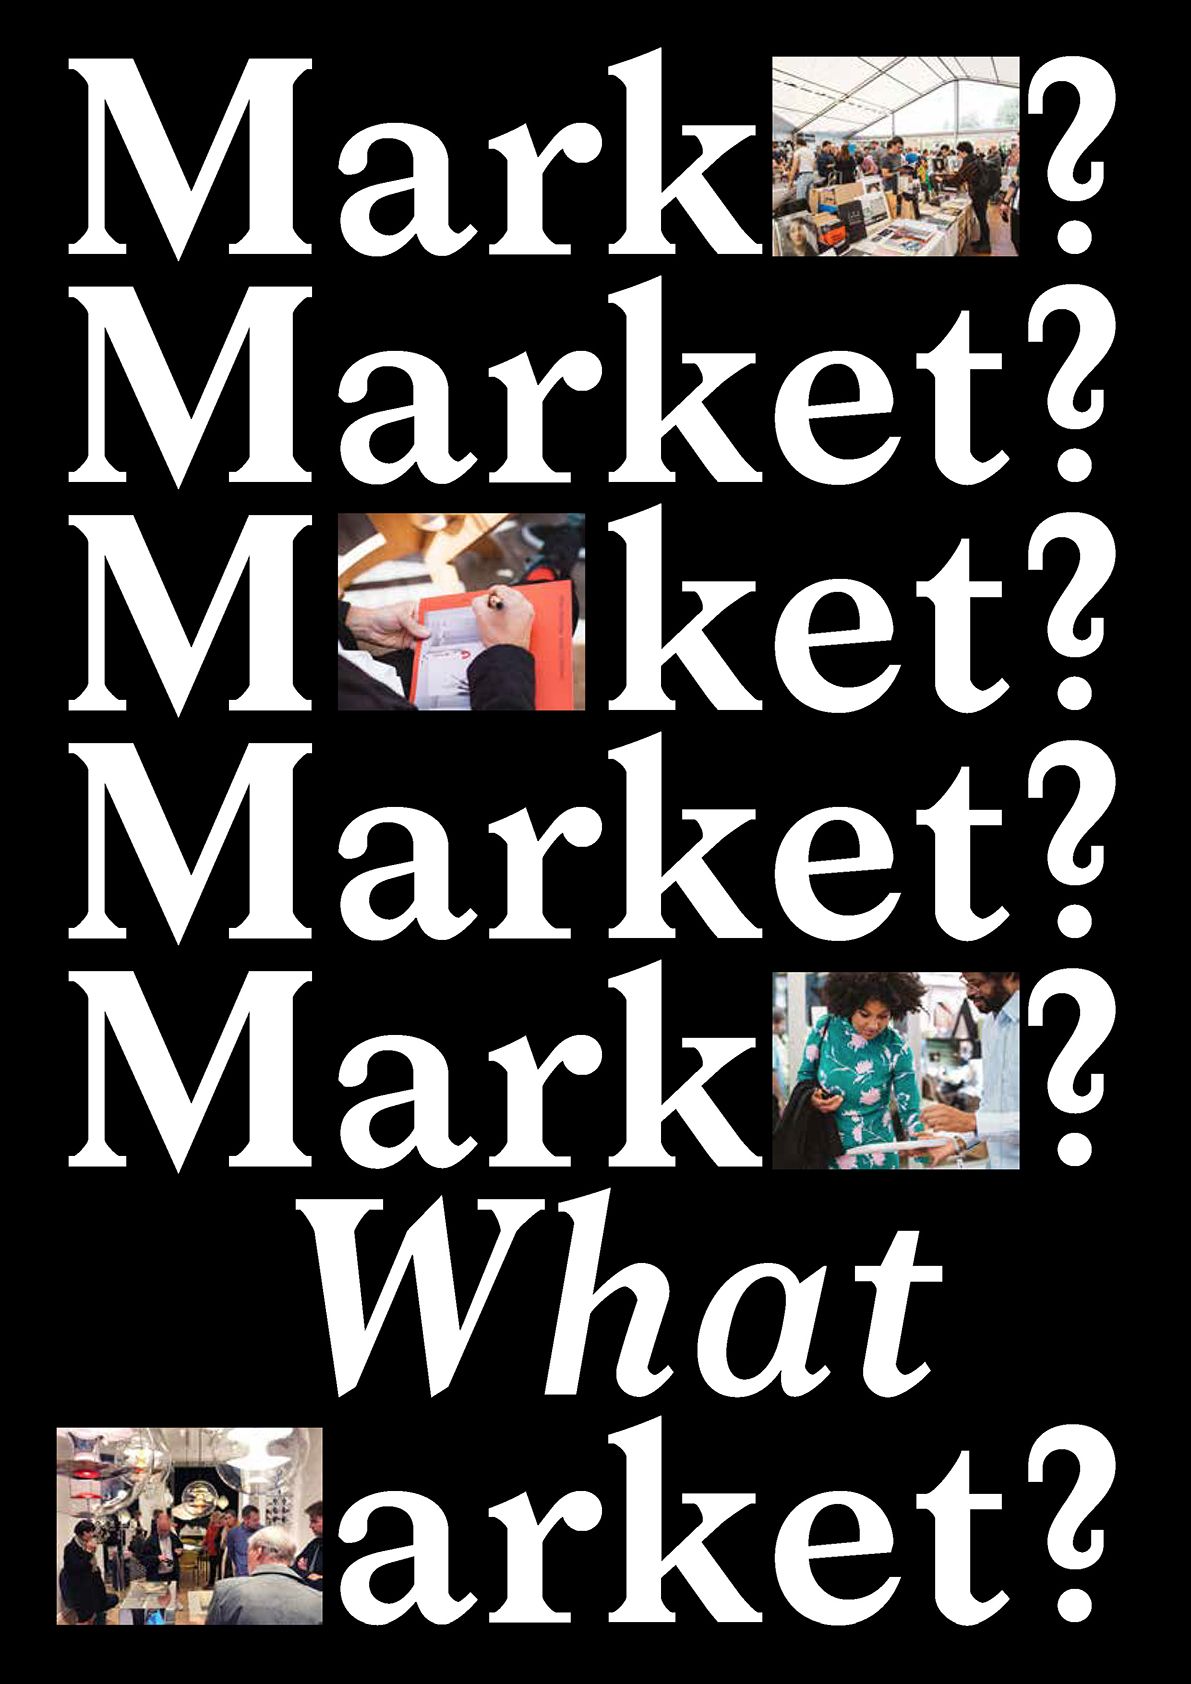 Market? What Market?